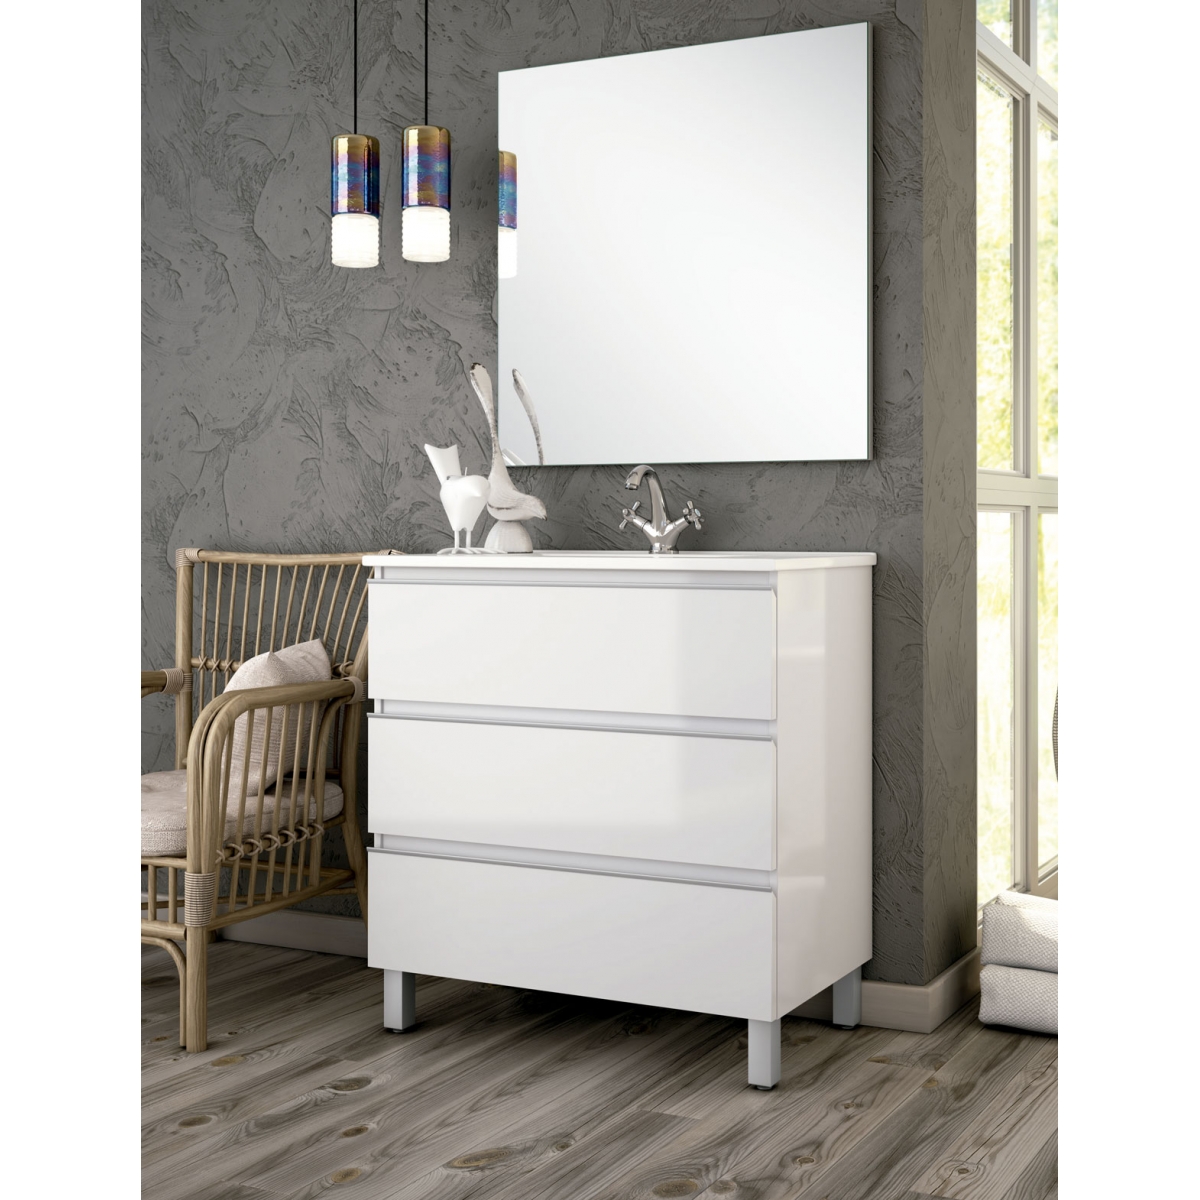 Calor componente Fortalecer Mueble de baño de suelo Dundee color Blanco Lacado de 70 cm - Comprar  online al mejor precio.